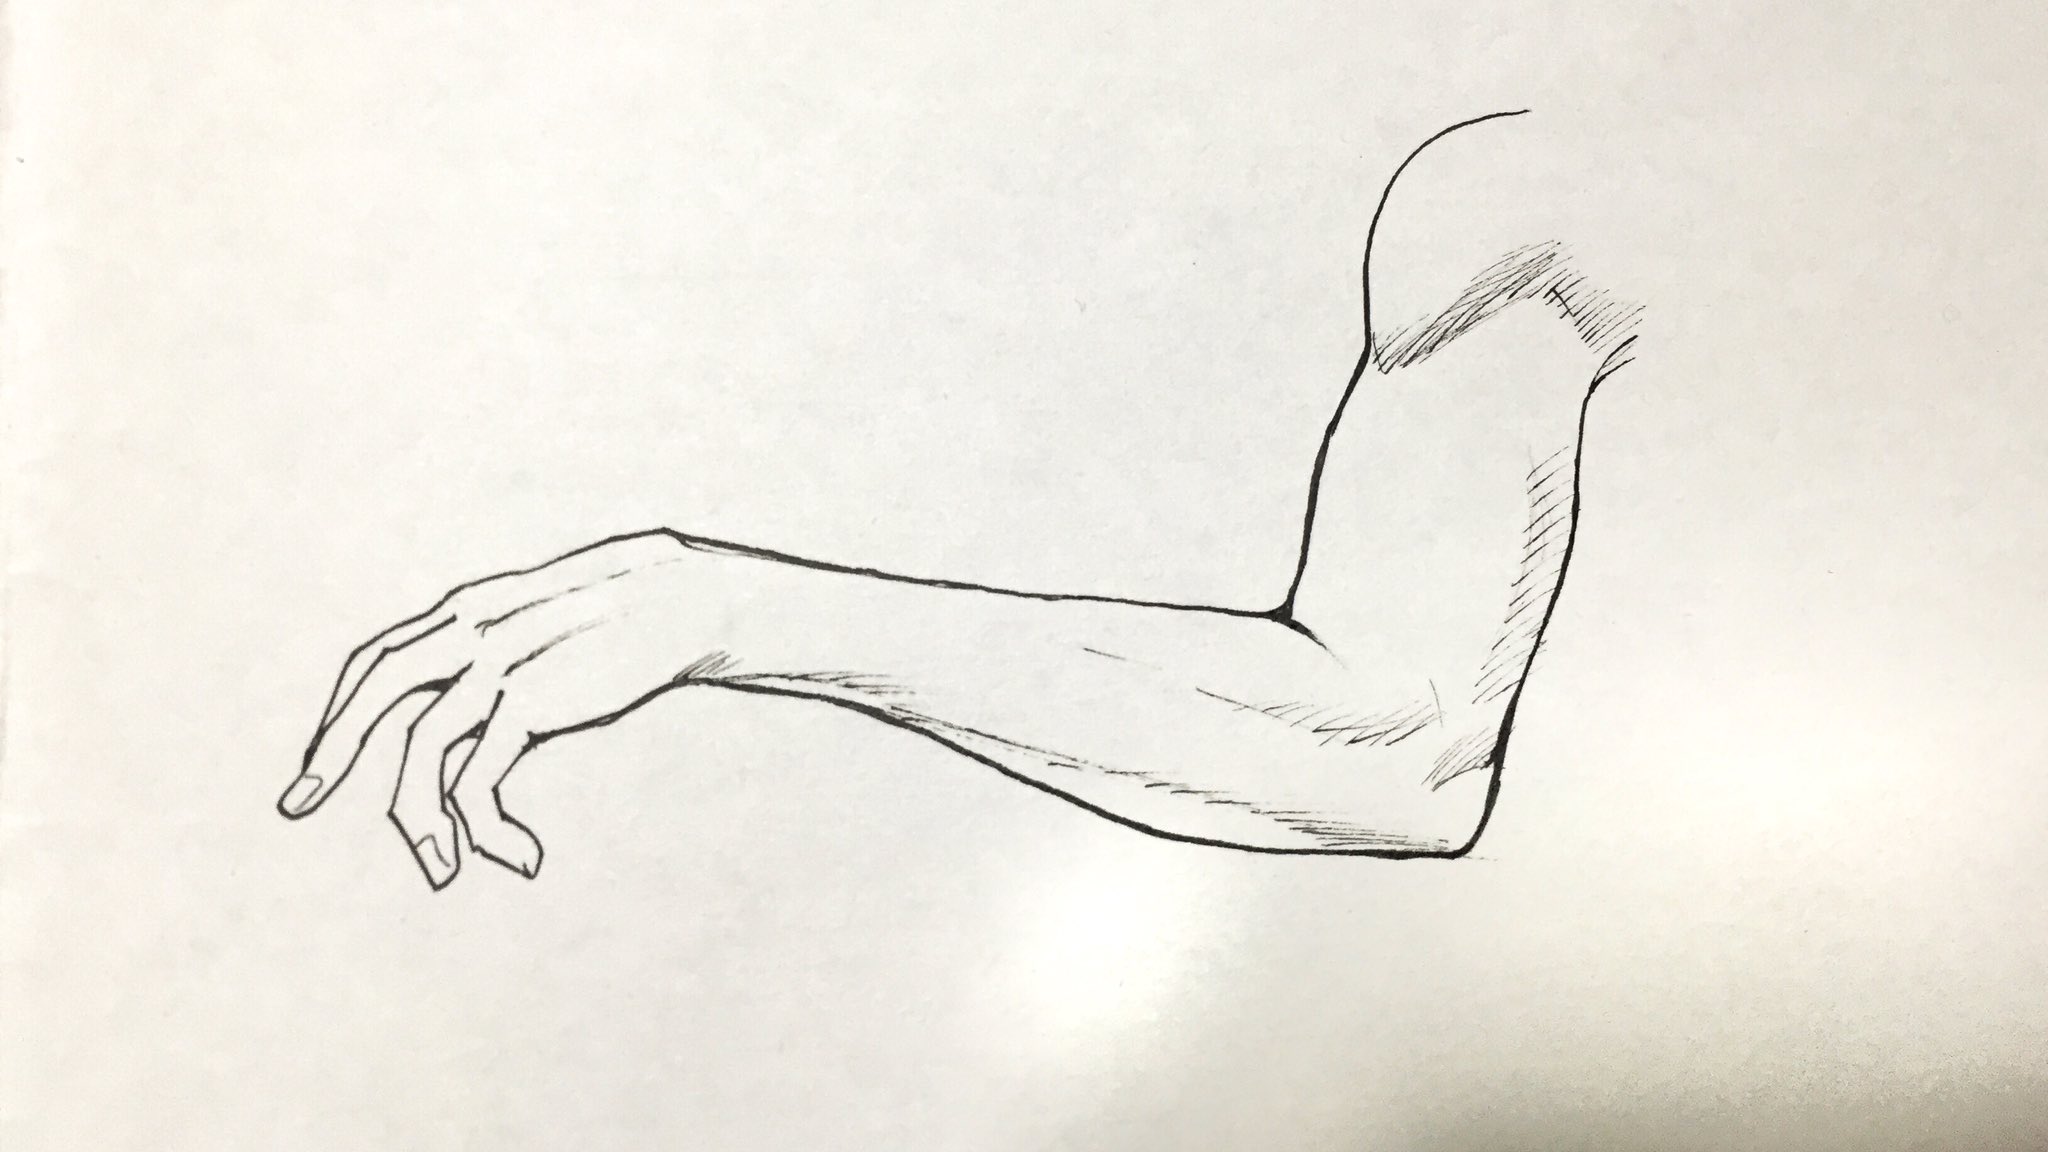 吉村拓也 イラスト講座 細マッチョな腕の描き方 男性の腕の筋肉を描くのに必要な 4ページの プチ解説イラスト もよろしければどうぞ